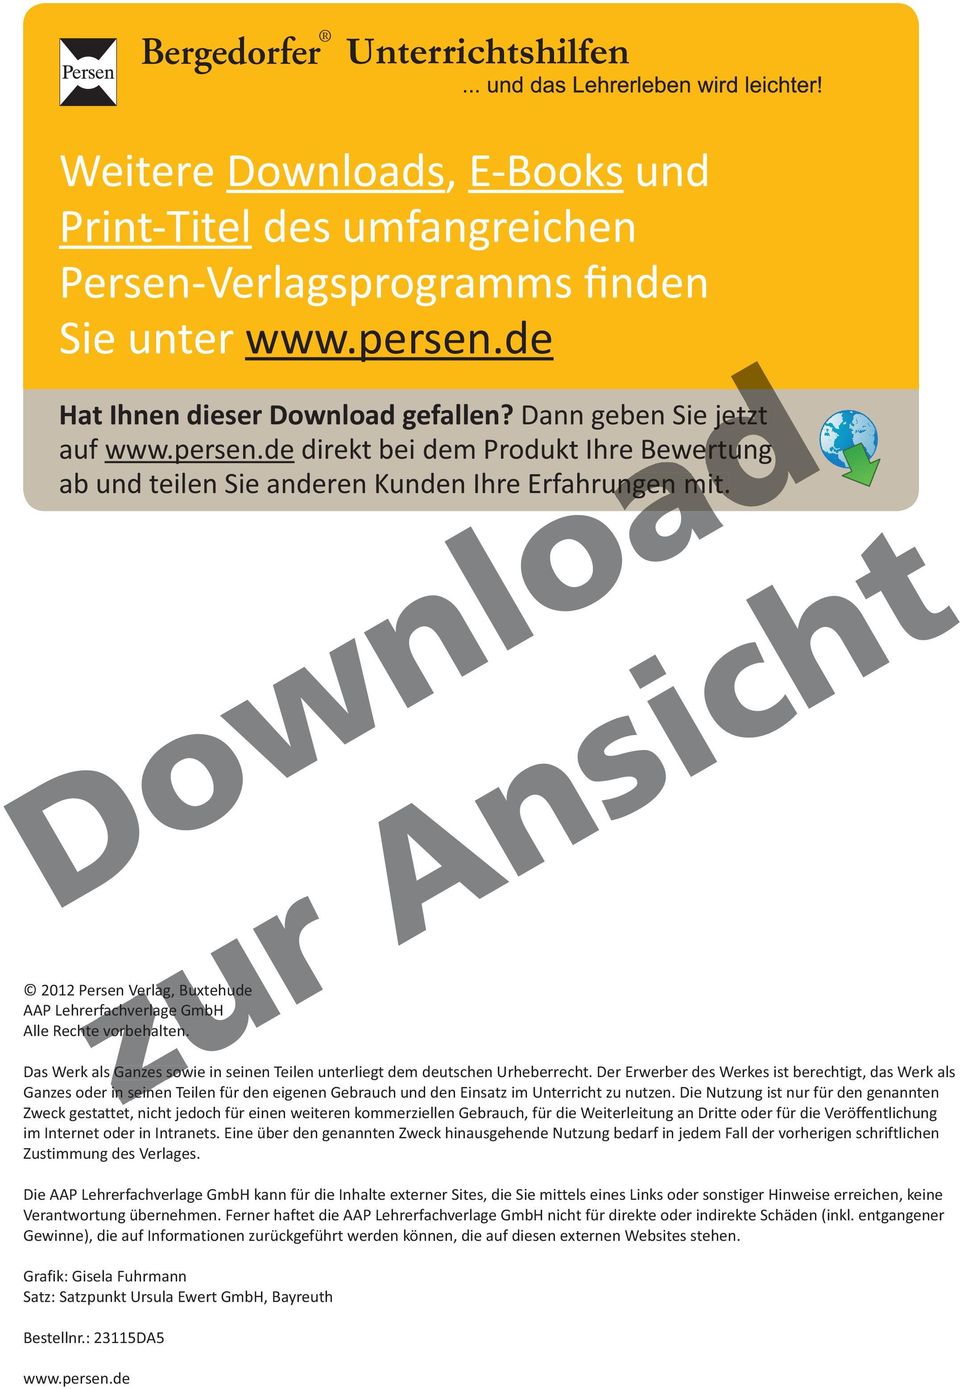 2012 Persen Verlag, Buxtehude AAP Lehrerfachverlage rfachverla GmbH Alle Rechte vorbehalten. Das Werk als Ganzes sowie in seinen Teilen unterliegt dem deutschen Urheberrecht.